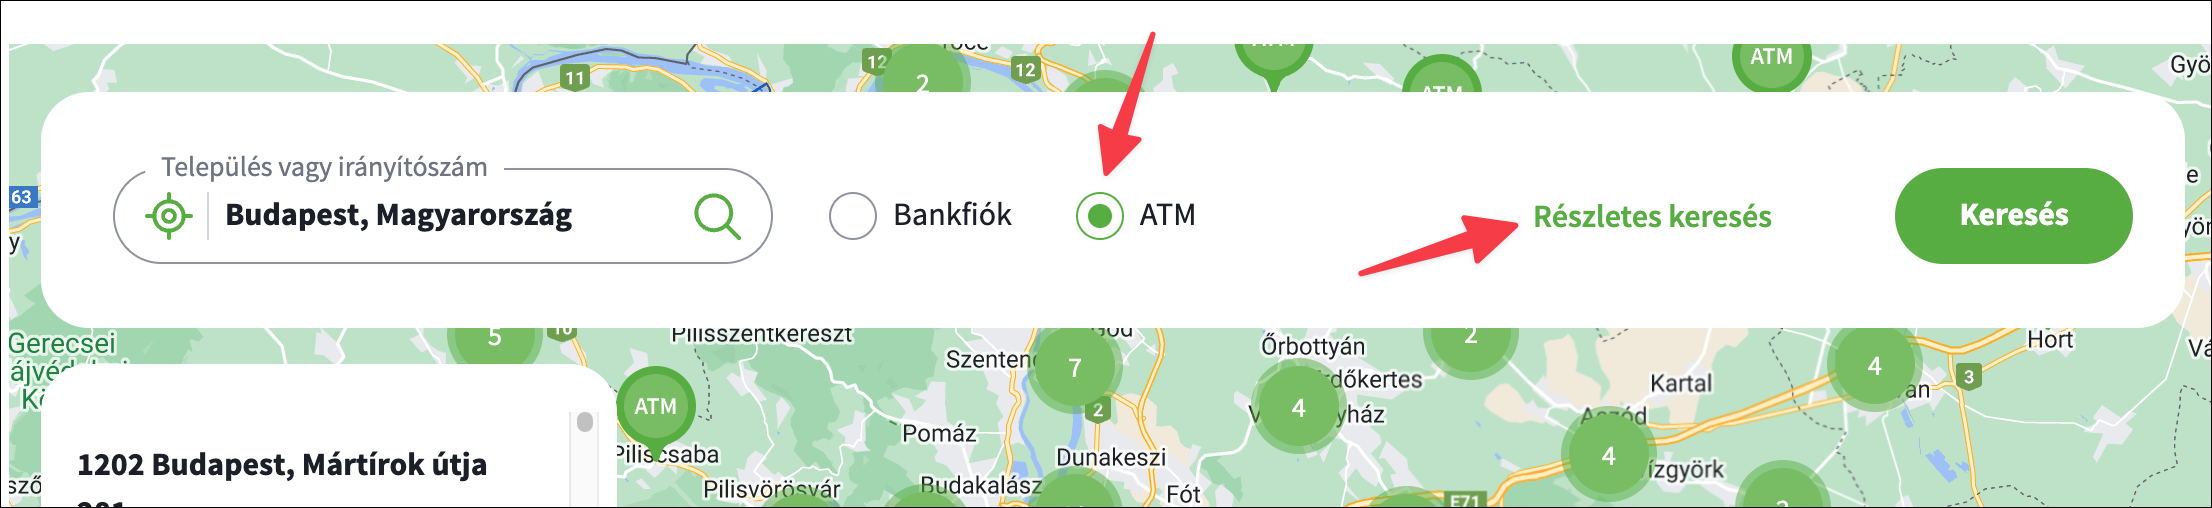 OTP eurós ATM keresése